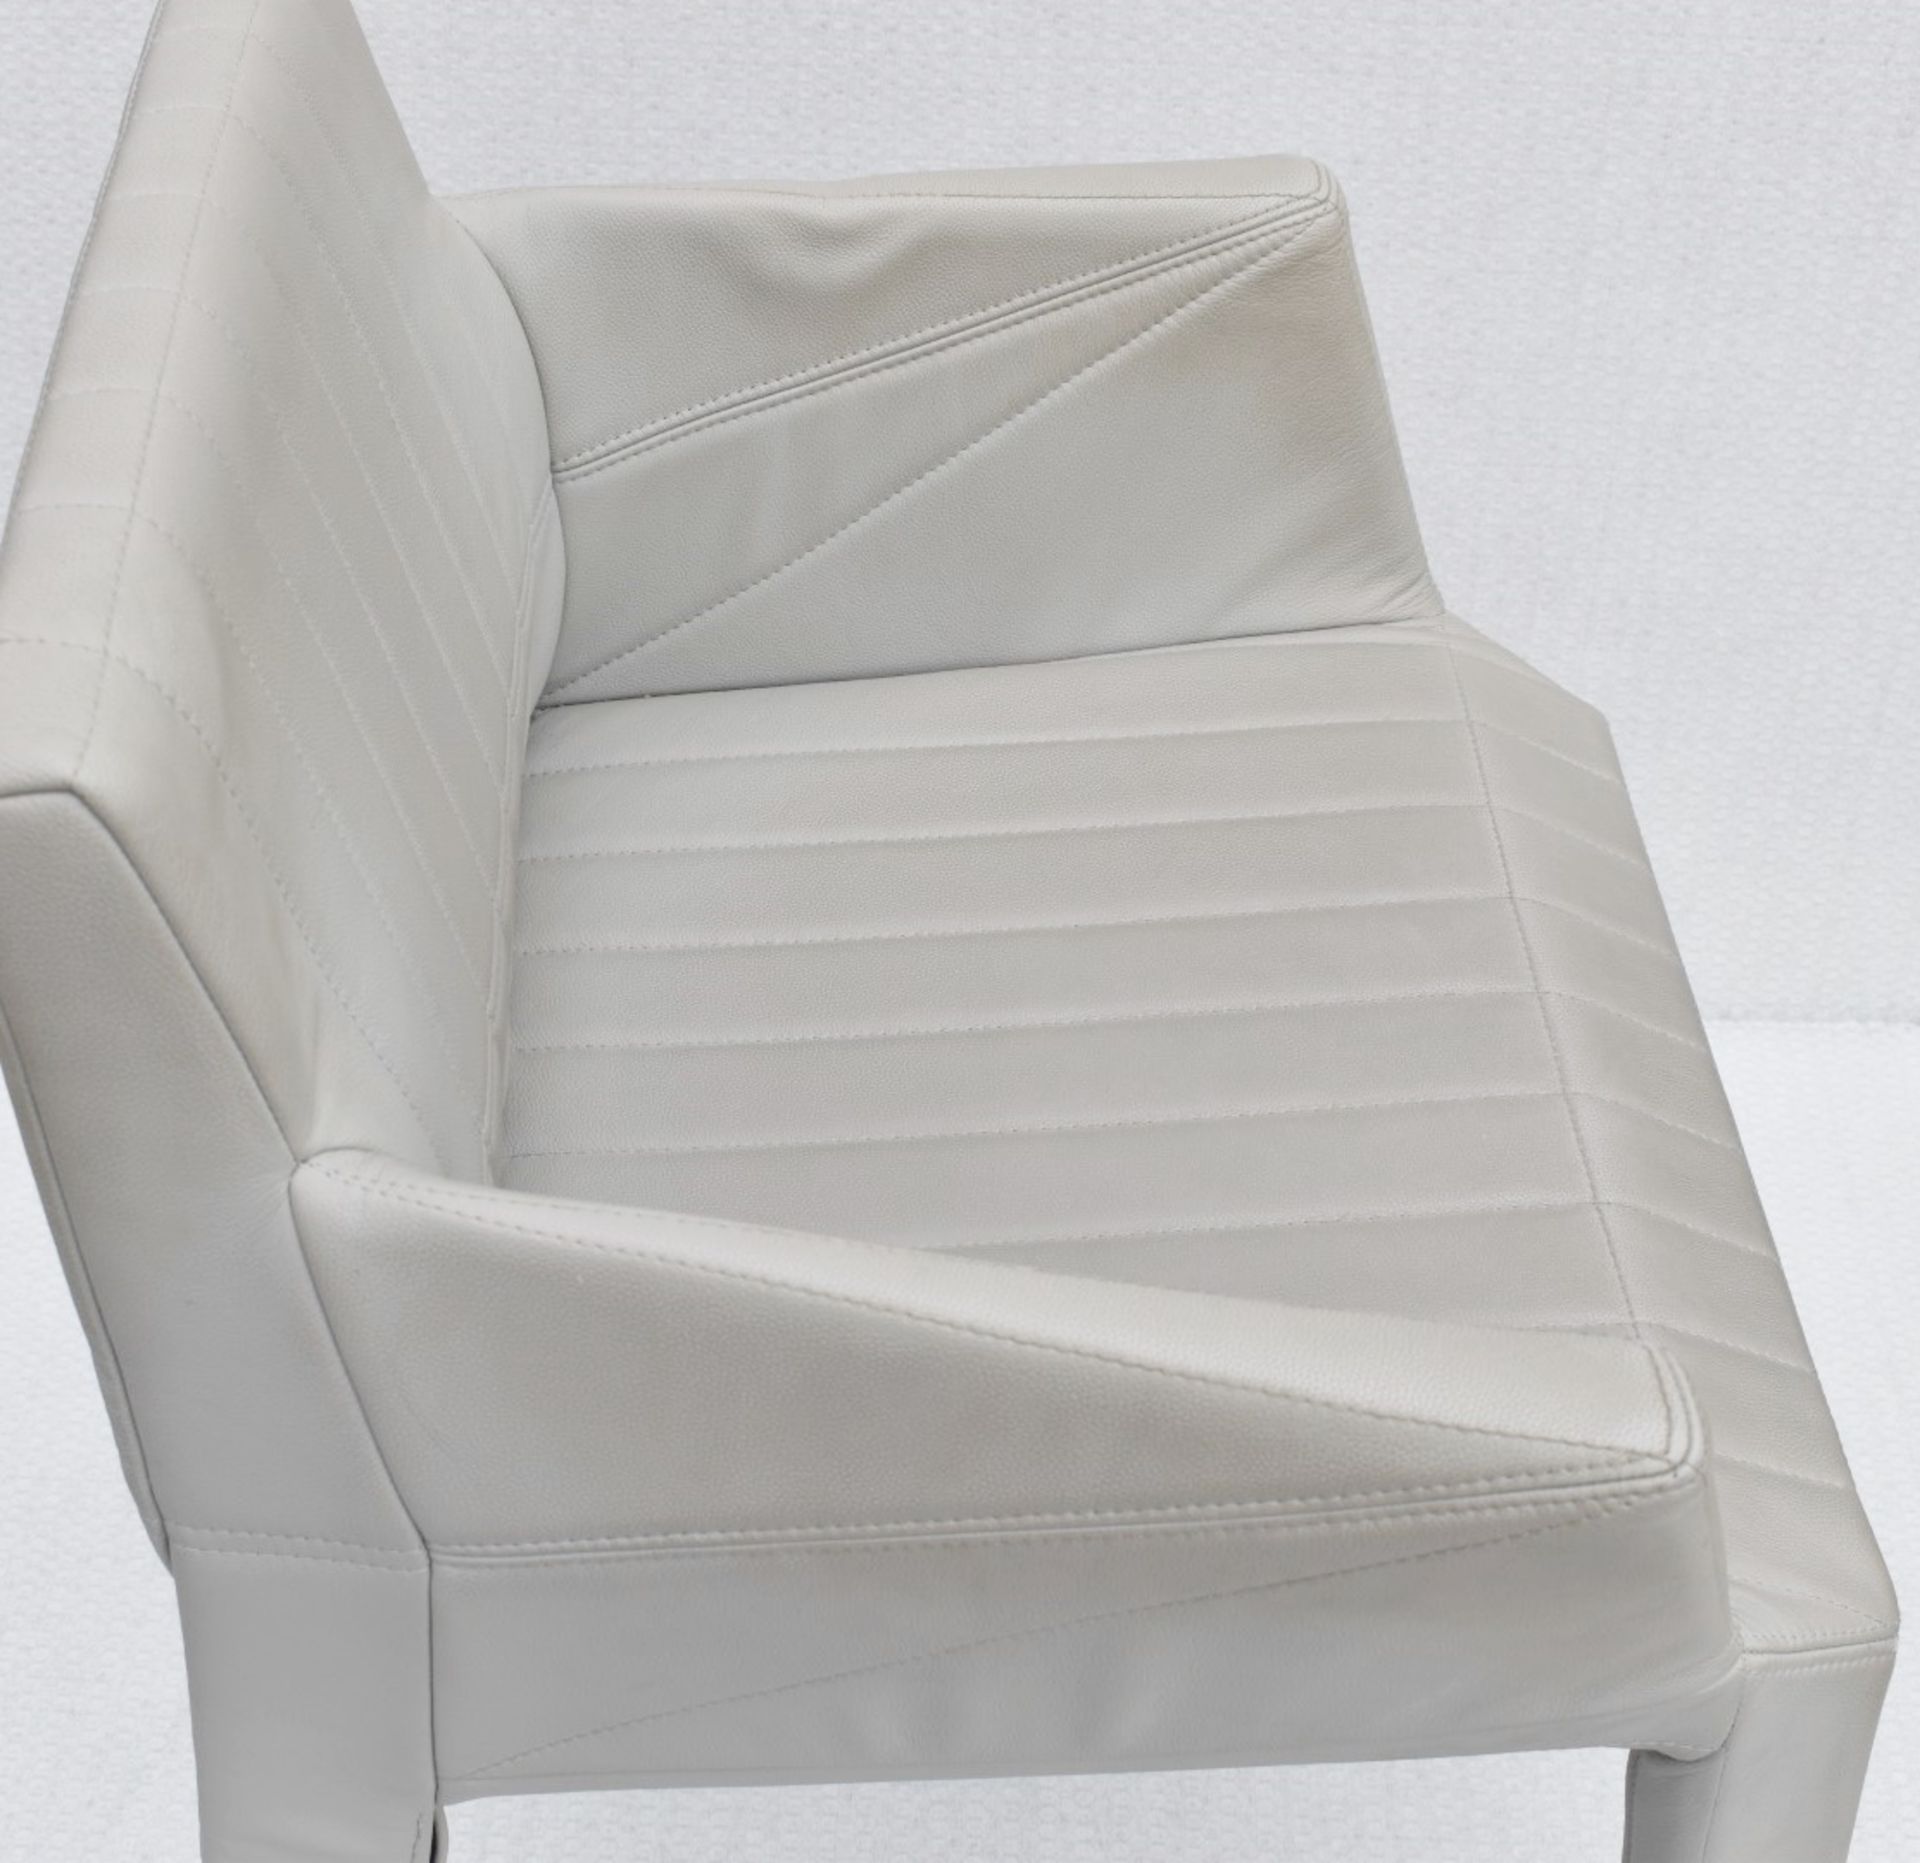 A Pair Of LIGNE ROSET 'Facett' Designer Carver Chairs - Total Original Price £2,432 - Image 7 of 12